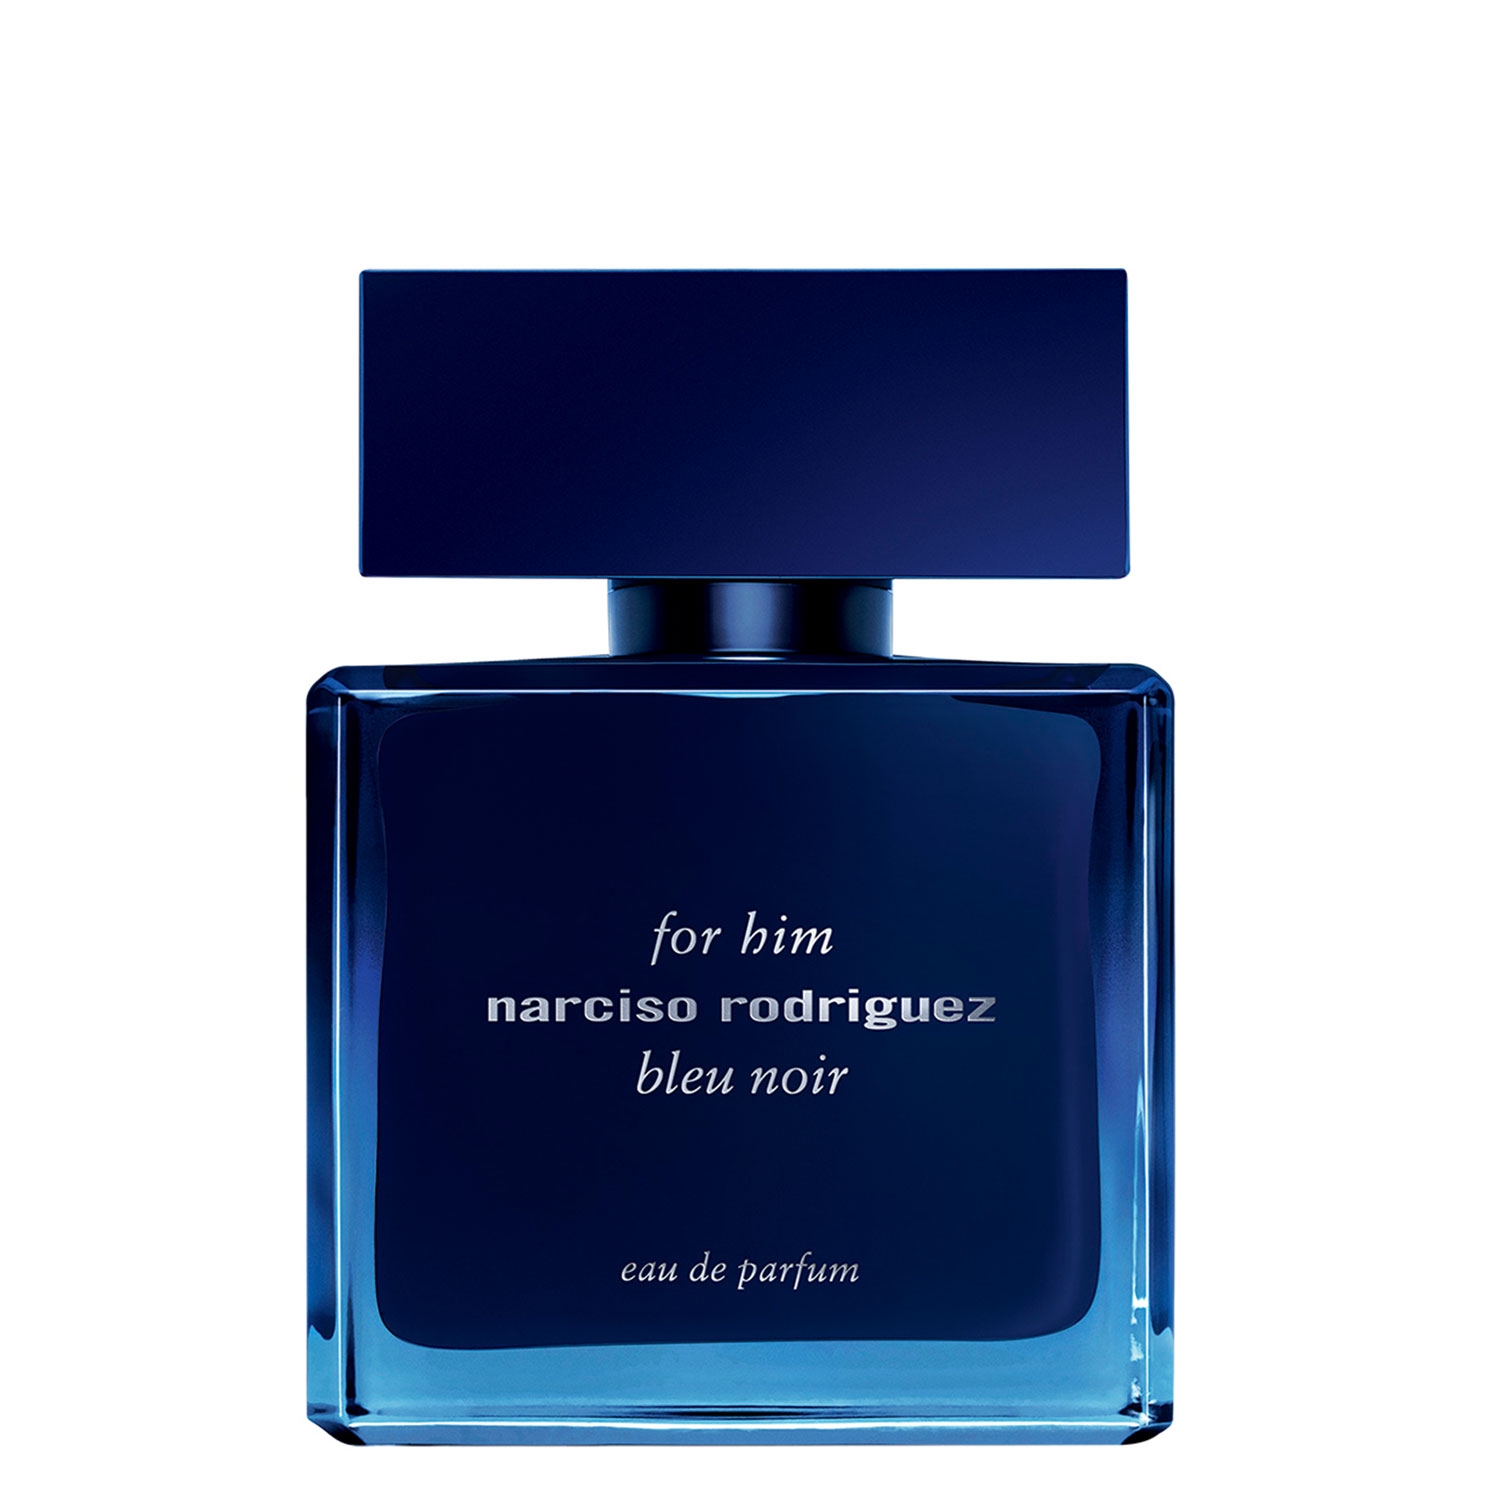 Product image from Narciso - For Him Bleu Noir Eau de Parfum